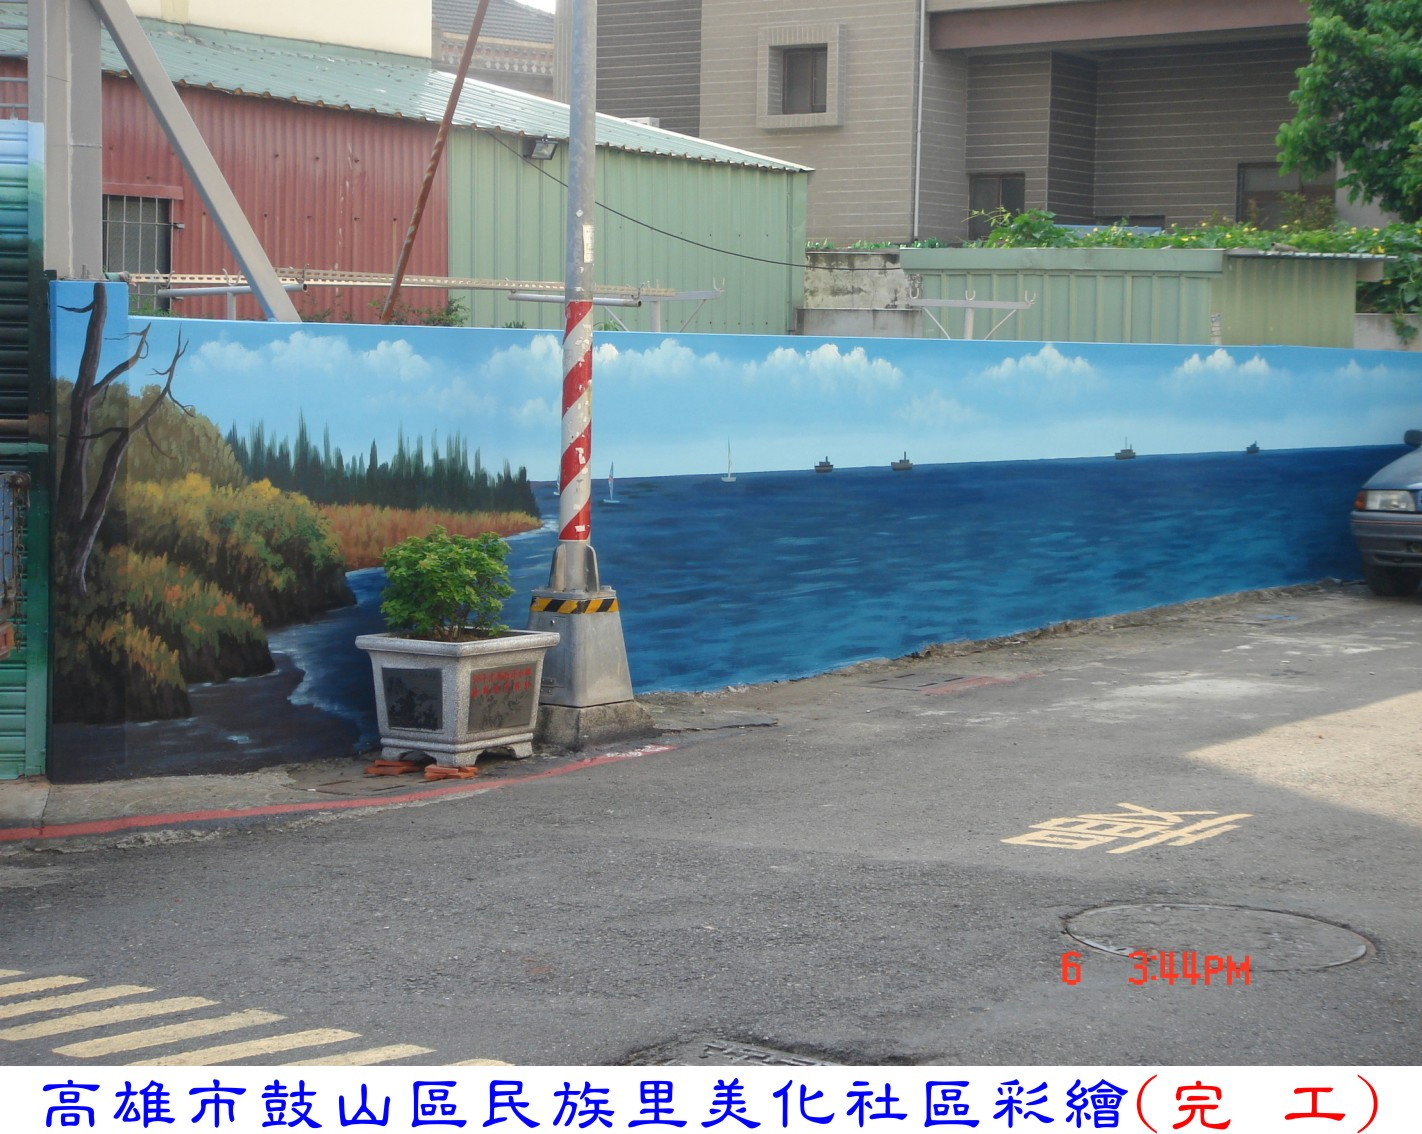 高雄市鼓山民族里社區右側圍牆彩繪完工